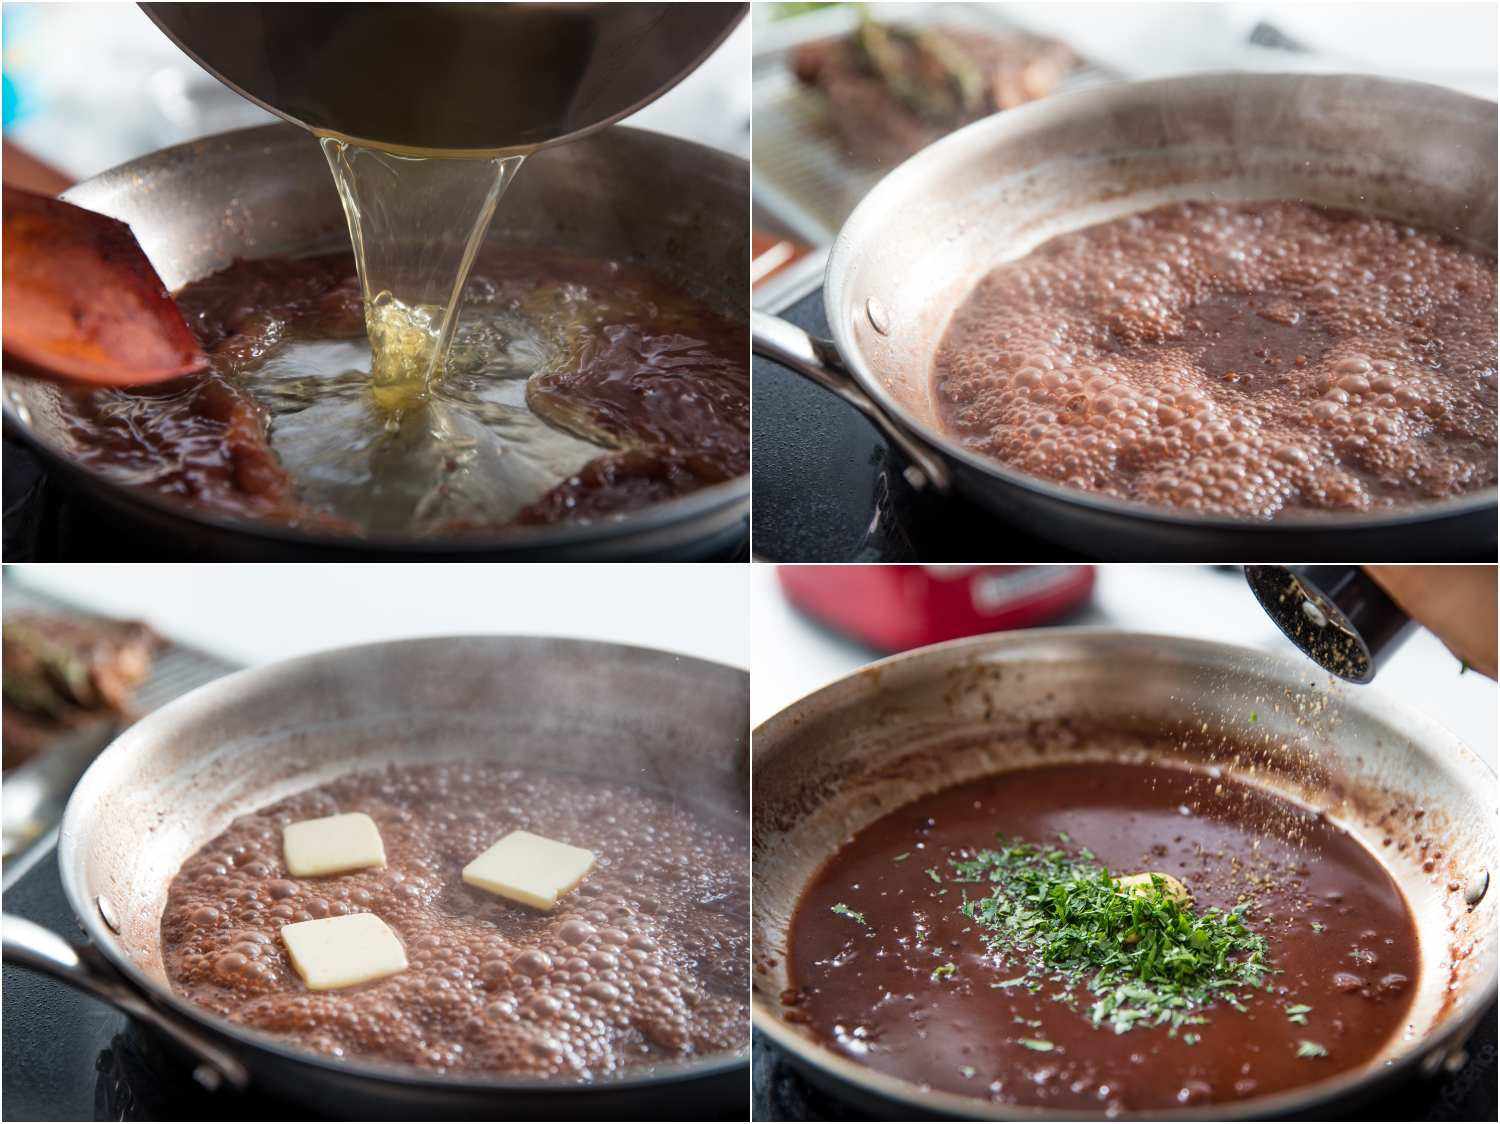 制作平底锅酱汁的照片拼贴:将鸡汤倒入盛有稀释过的葡萄酒和奶酪的煎锅中，混合物在煎锅中冒泡，在混合物中加入少量黄油，加入黑胡椒和香草